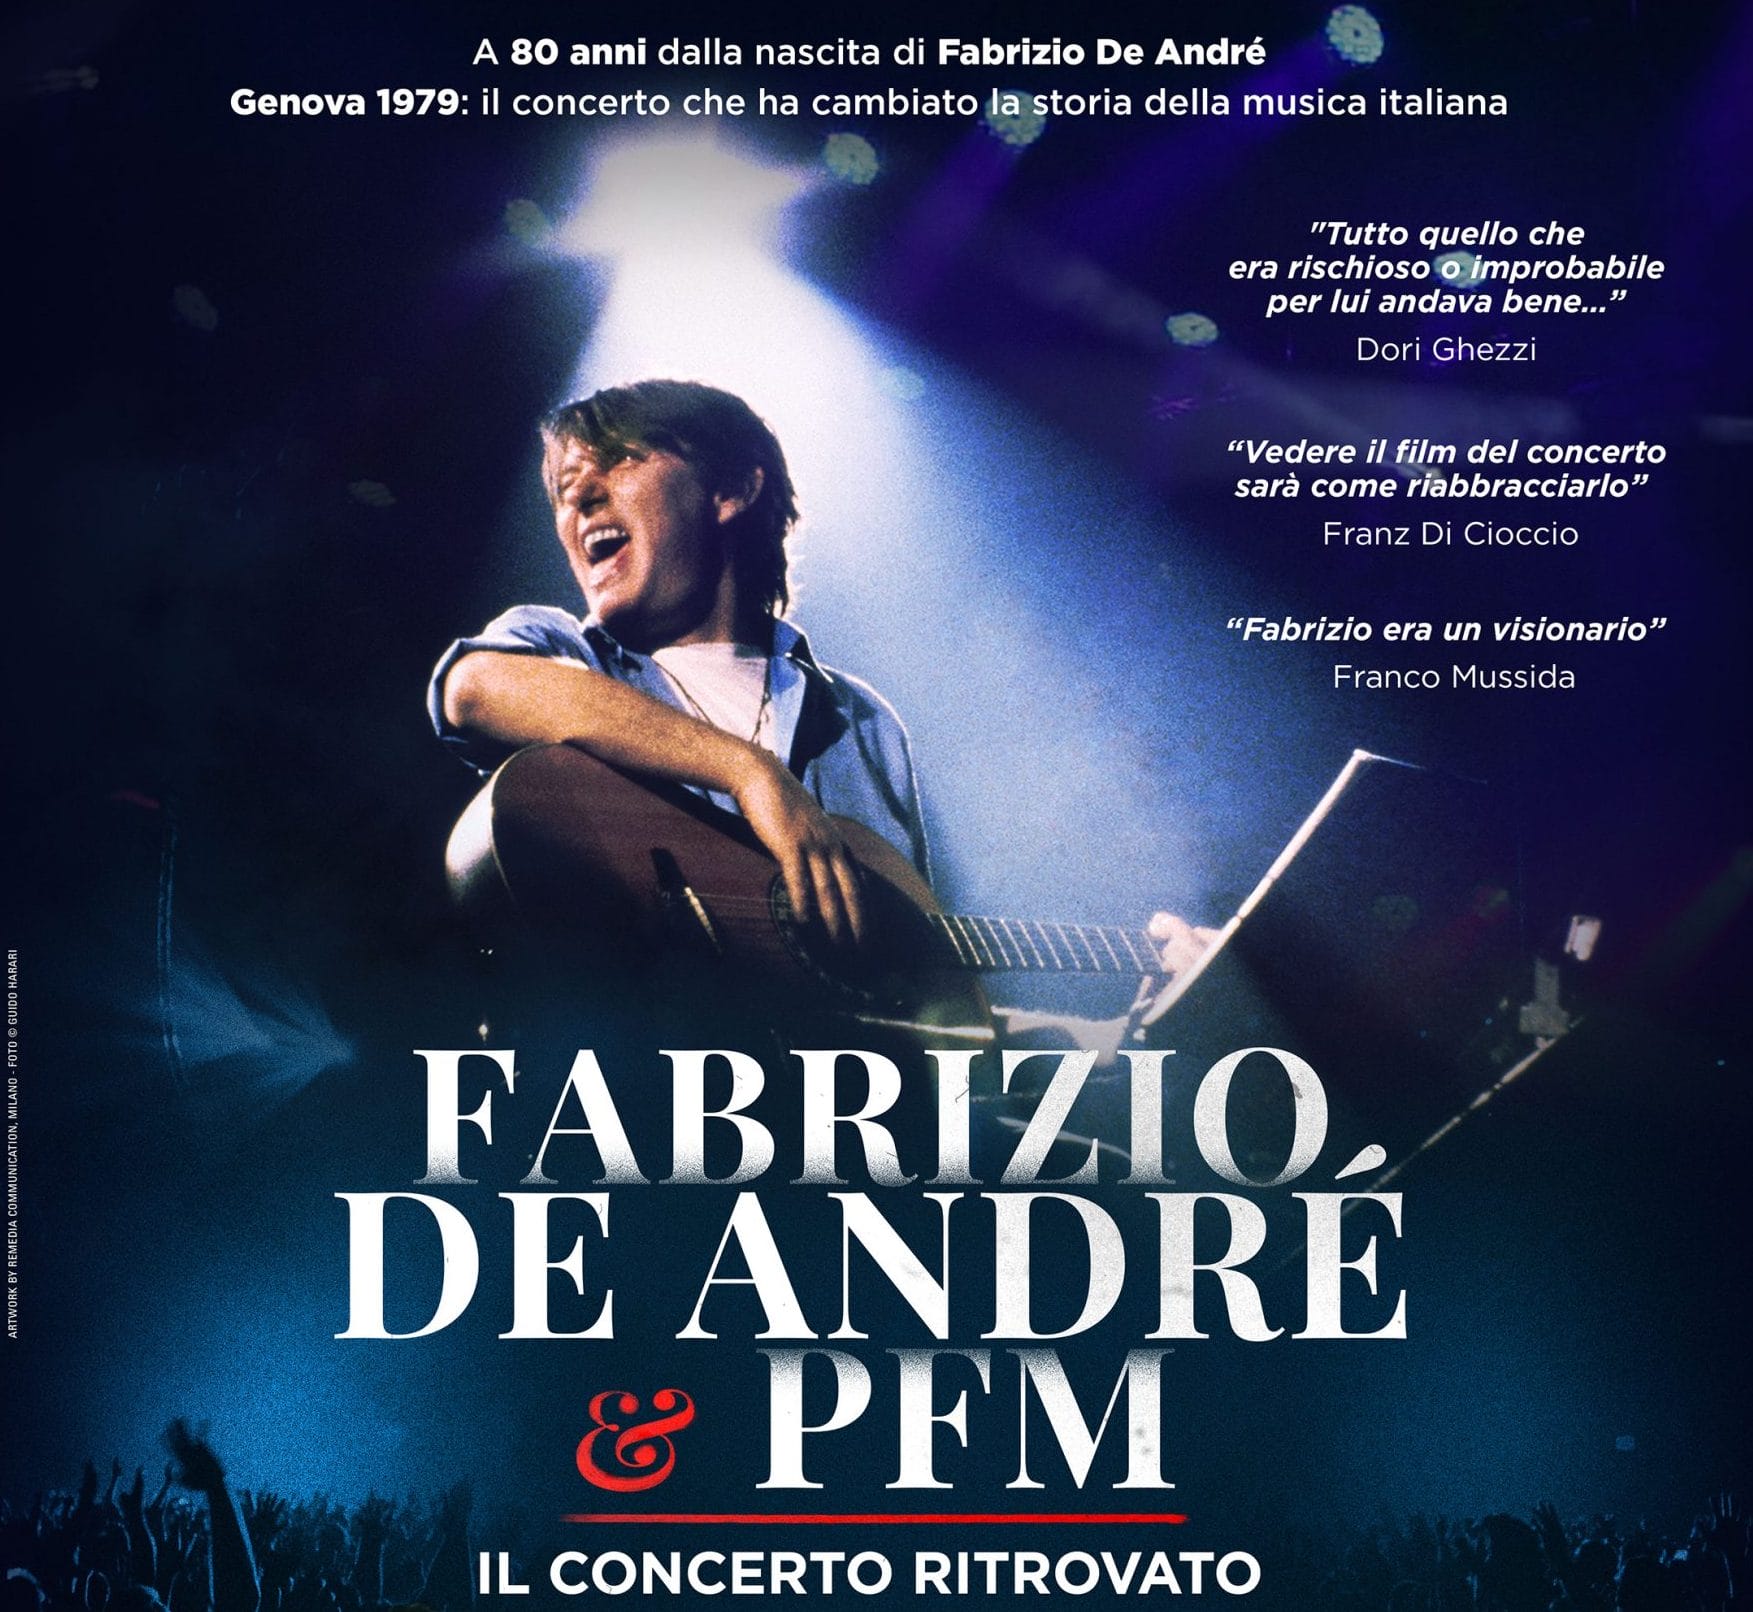 Fabrizio De André + Pfm: il concerto ritrovato